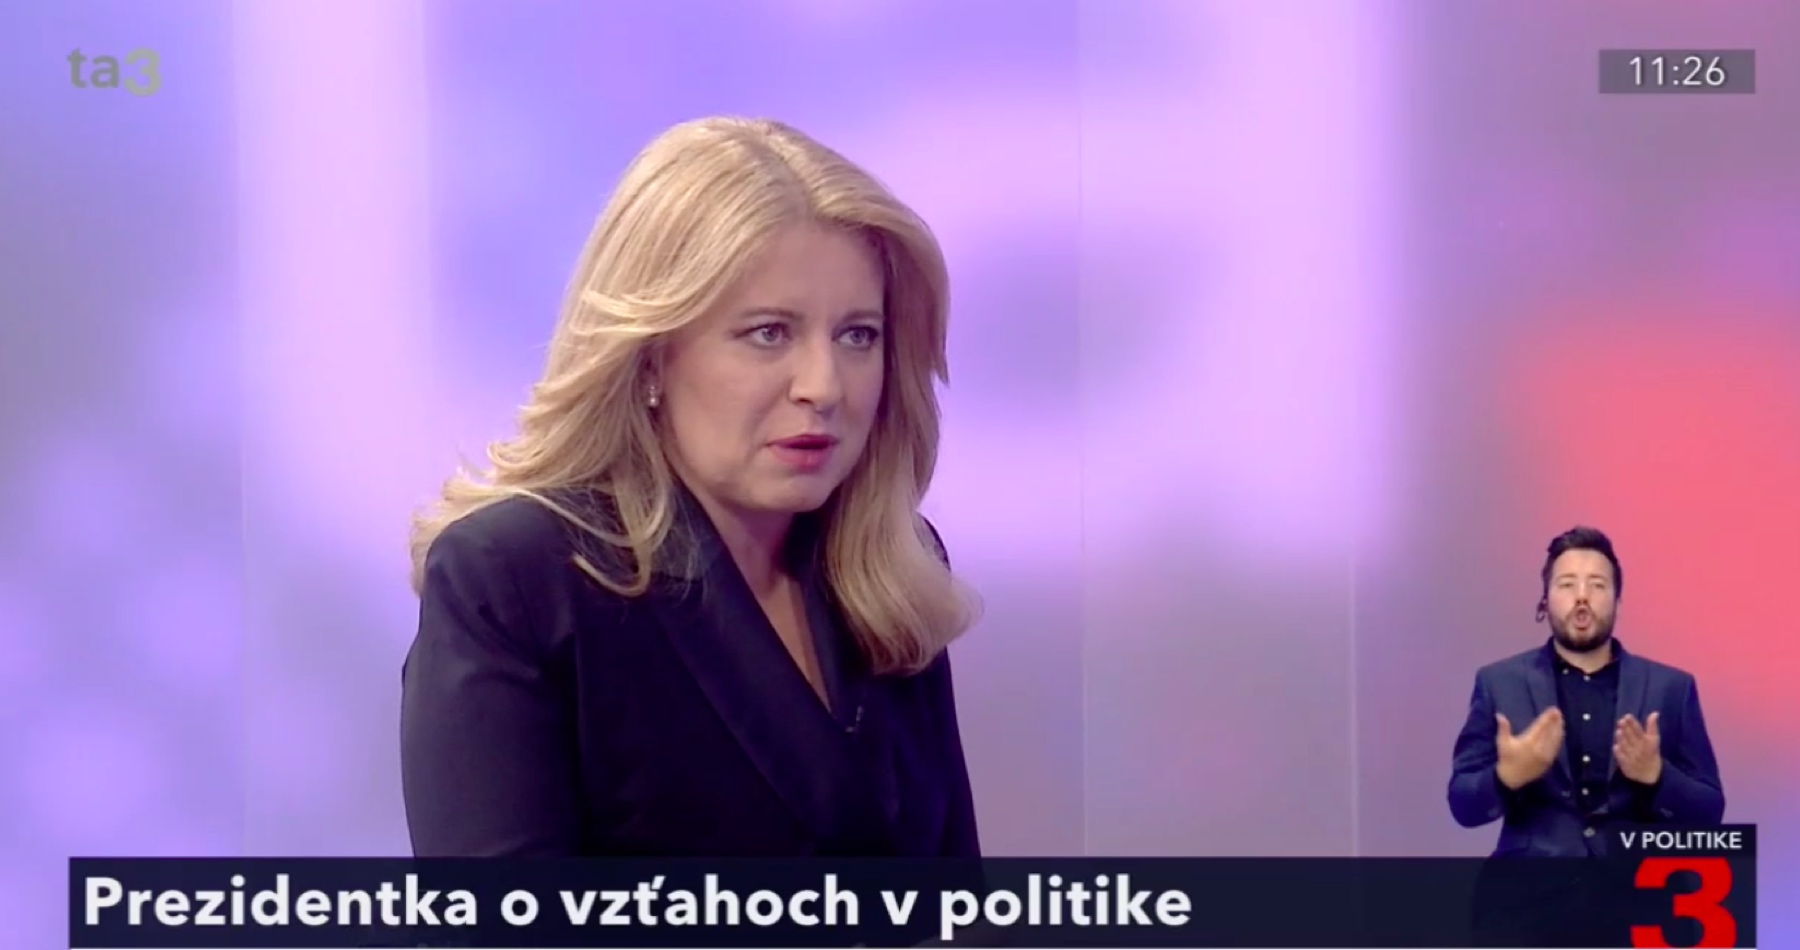 VIDEO: Ľudia podľa Čaputovej nemajú kapacitu chápať politické súvislosti. Prezidentka sa obáva, že hnev Slovákov v dôsledku zdražovania a zlej ekonomickej situácie sa obráti proti Ukrajincom